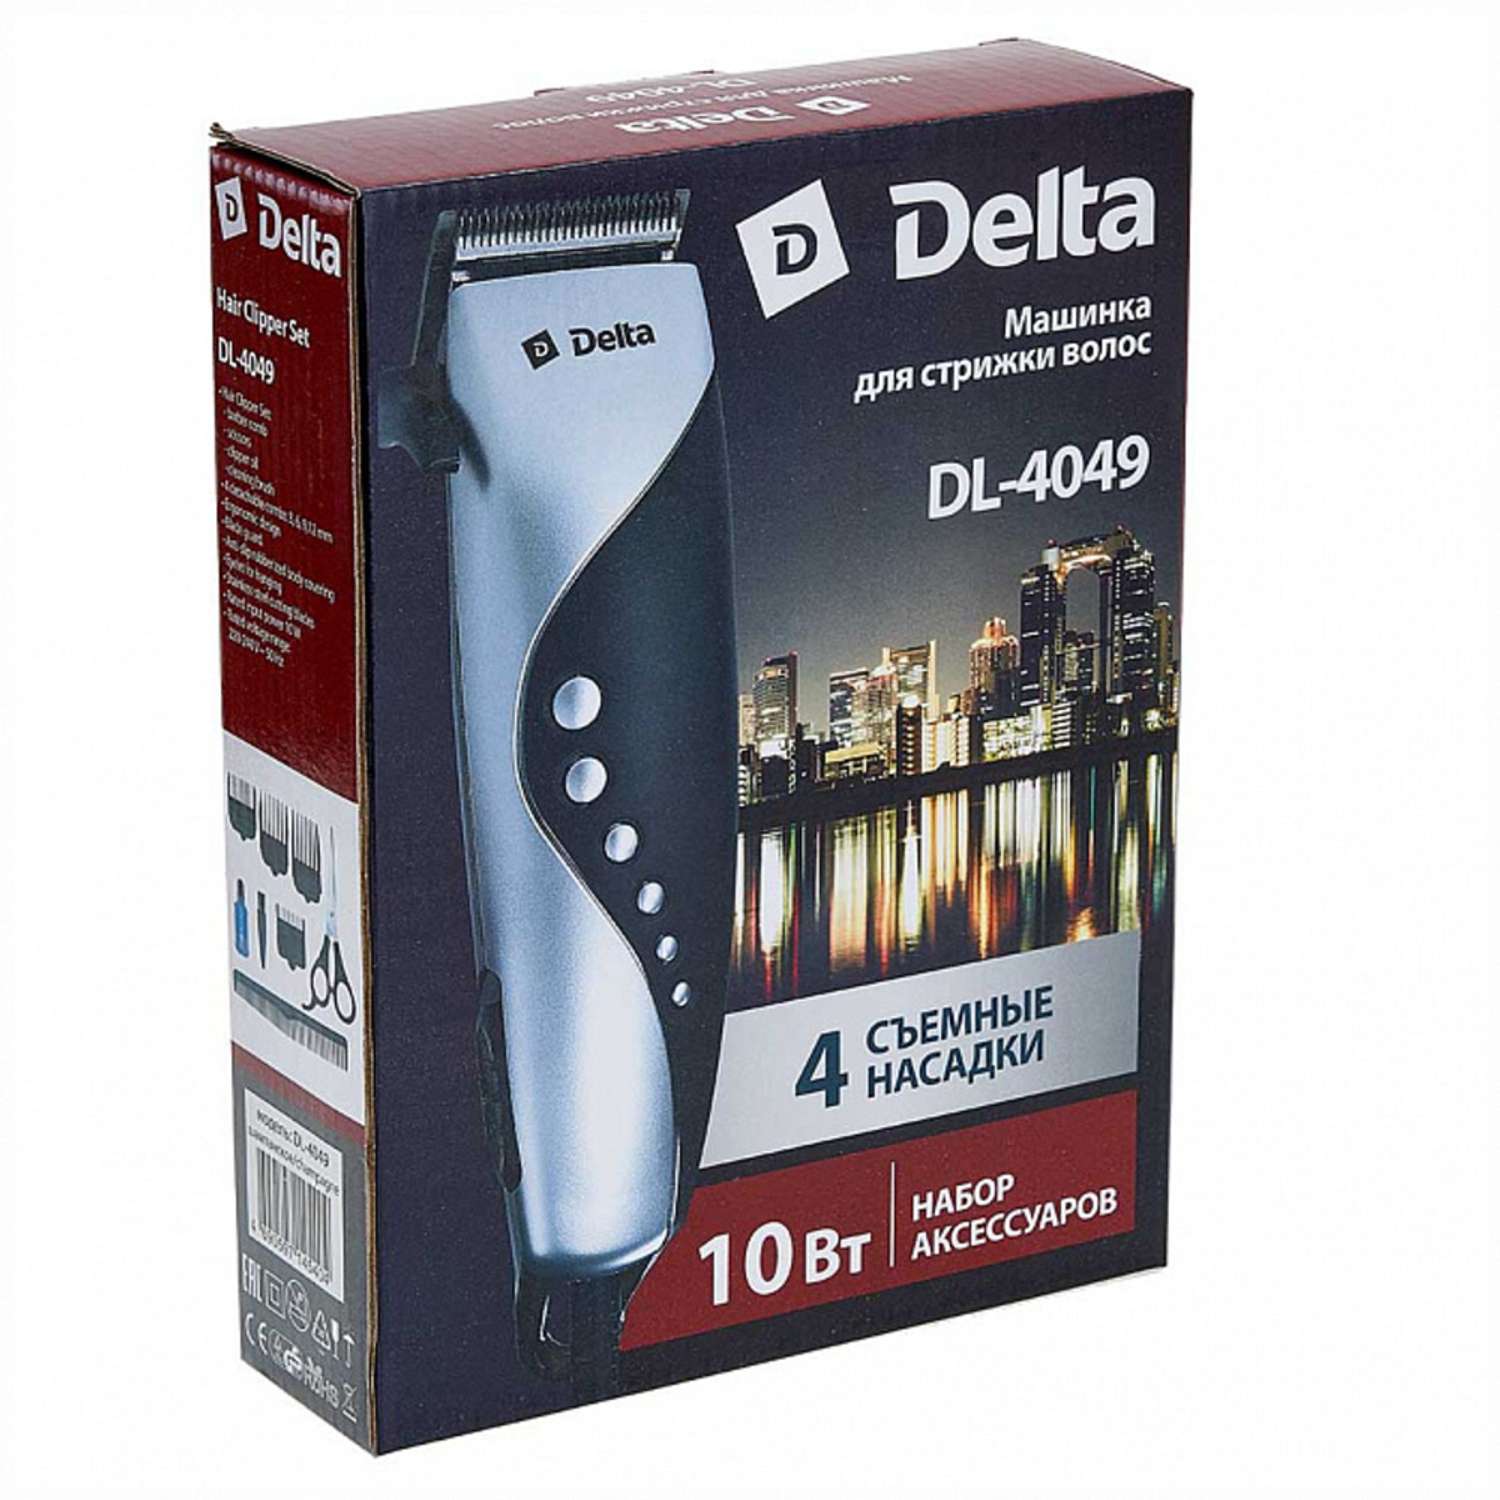 Машинка для стрижки волос Delta DL-4049 шампанское 10Вт 4 съемных гребня - фото 3